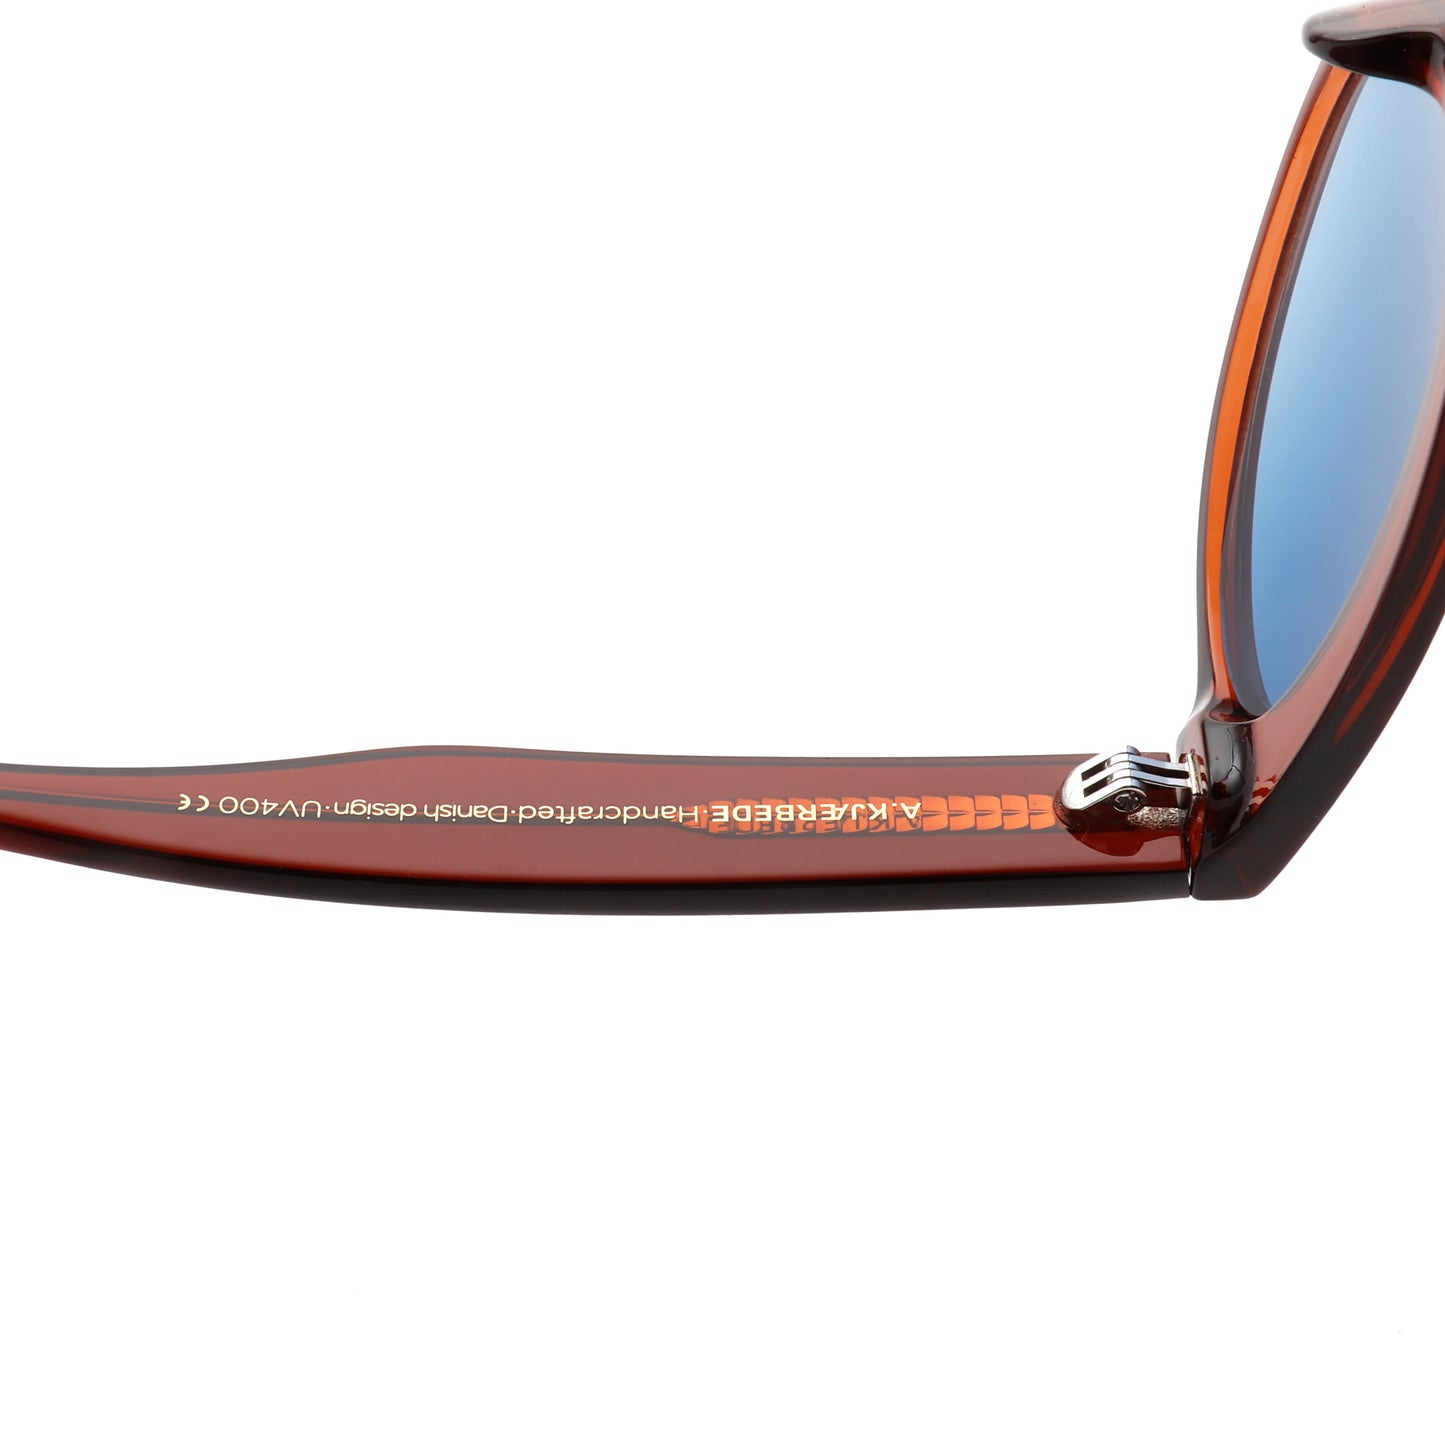 A.Kjaerbede Jake Sunglasses in Brown Transparent color